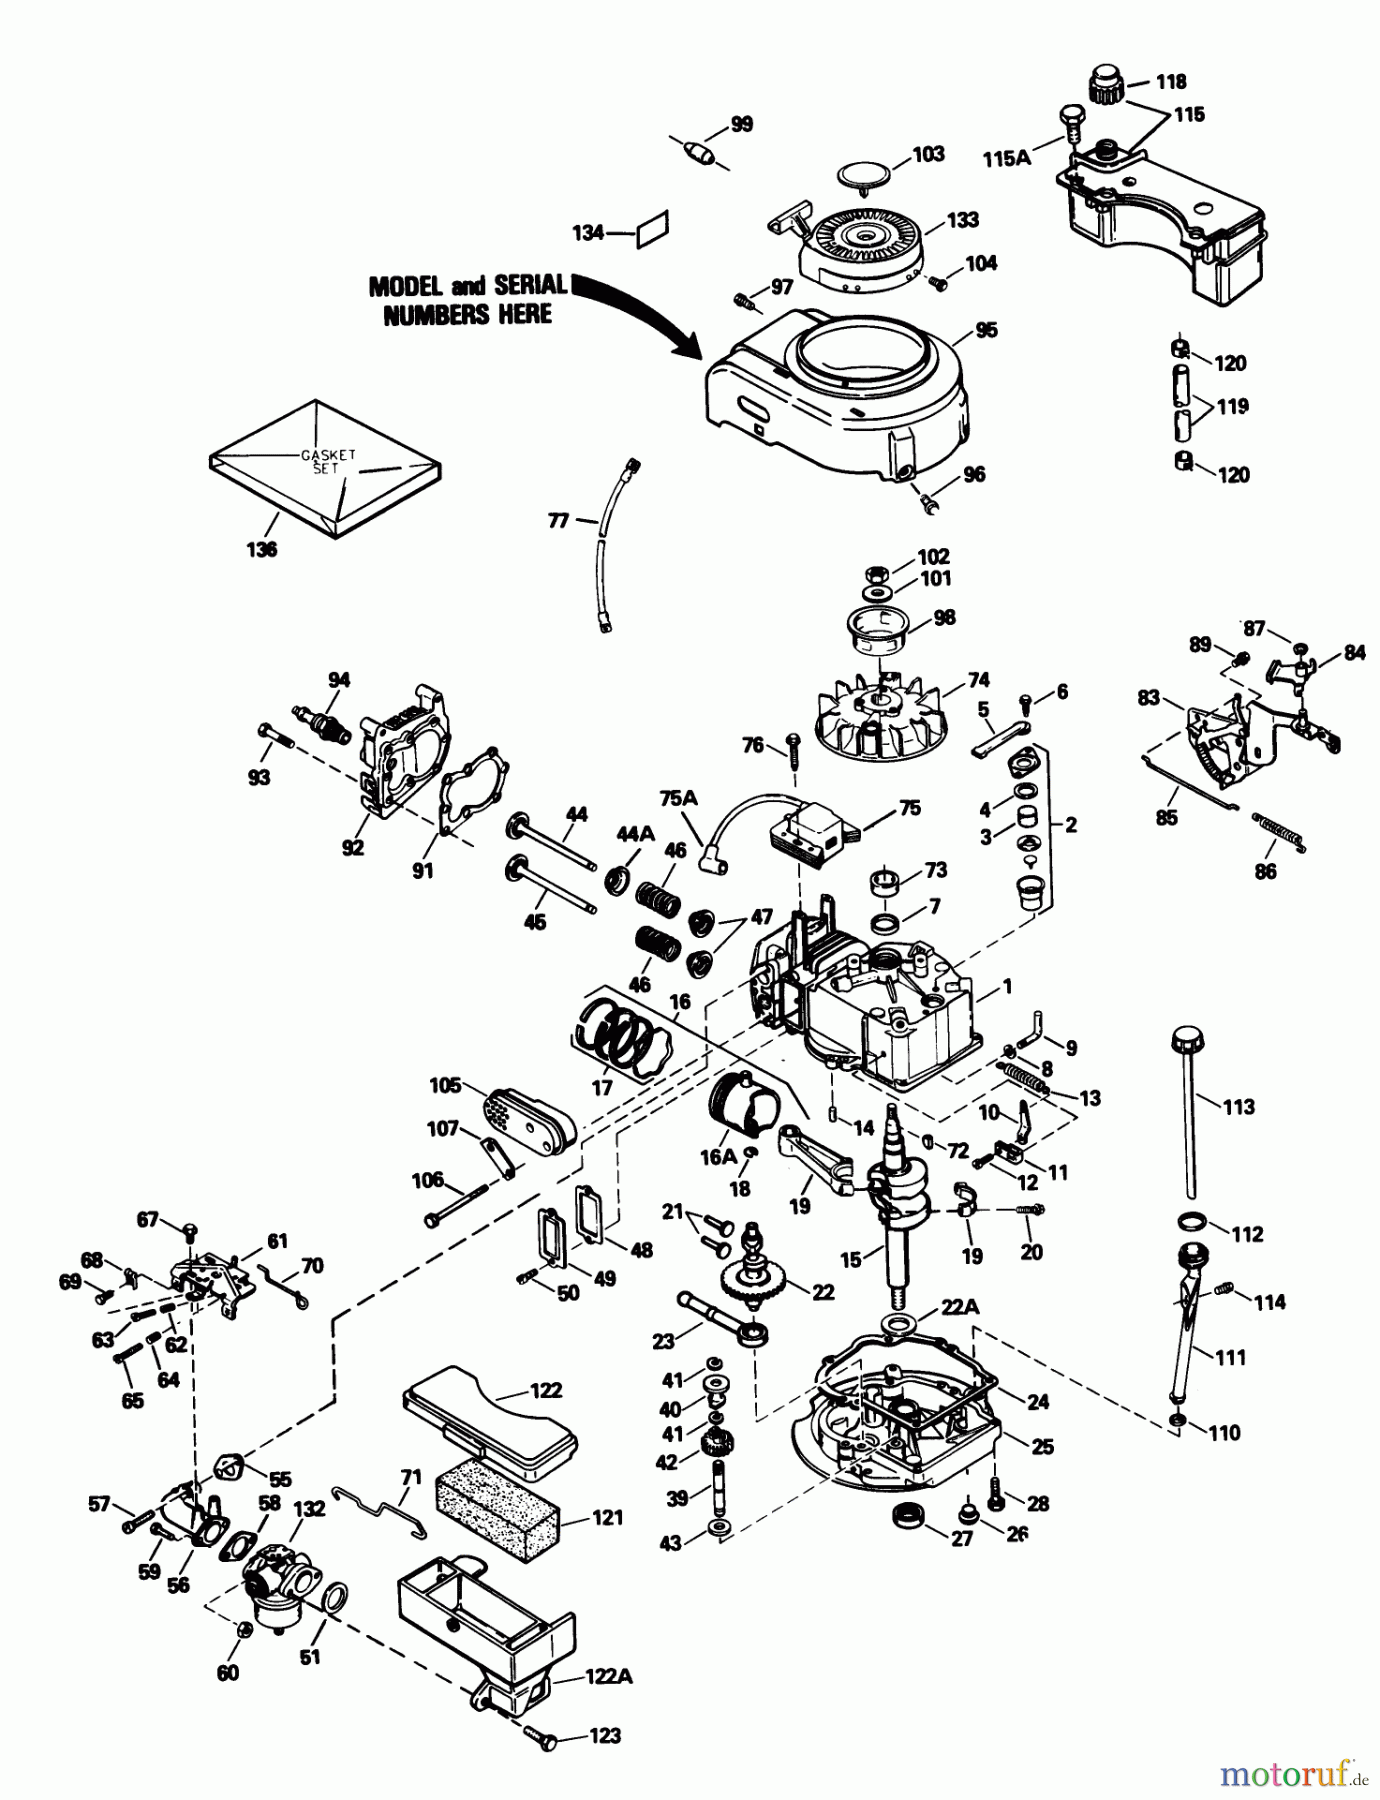  Toro Neu Mowers, Walk-Behind Seite 1 20531 - Toro Lawnmower, 1988 (8000001-8999999) ENGINE MODEL NO. TVS105-53108F